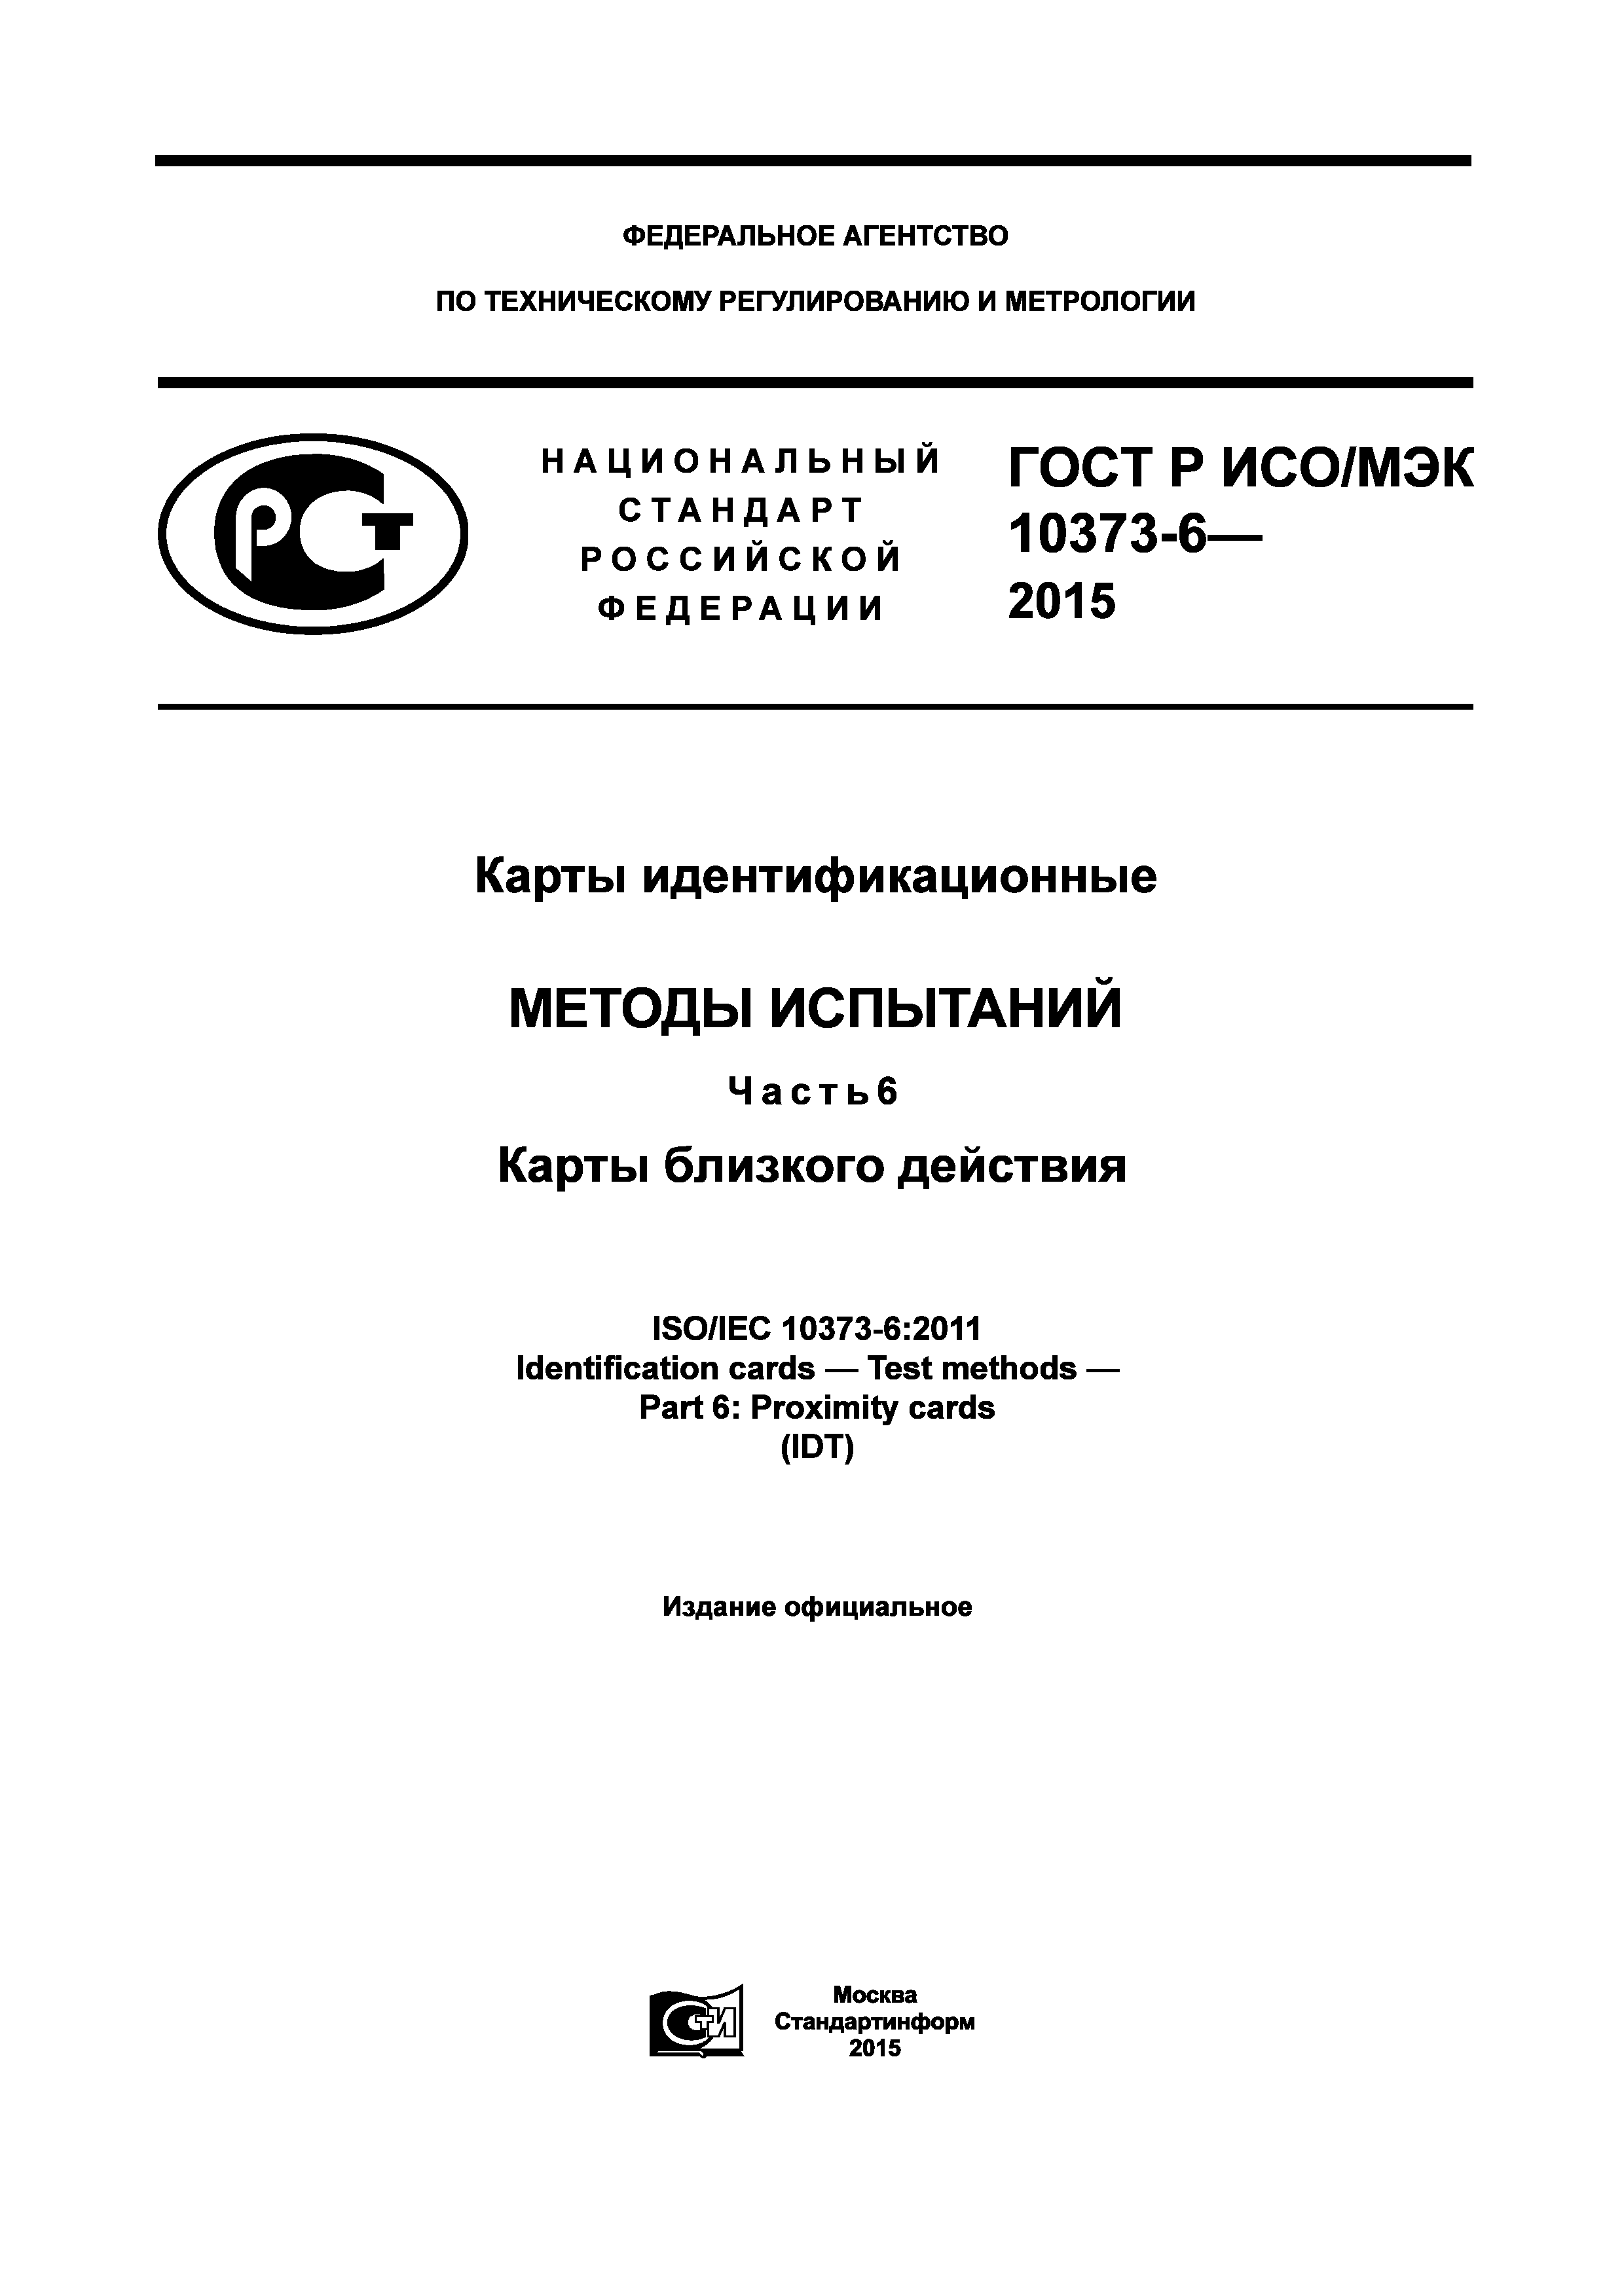 ГОСТ Р ИСО/МЭК 10373-6-2015